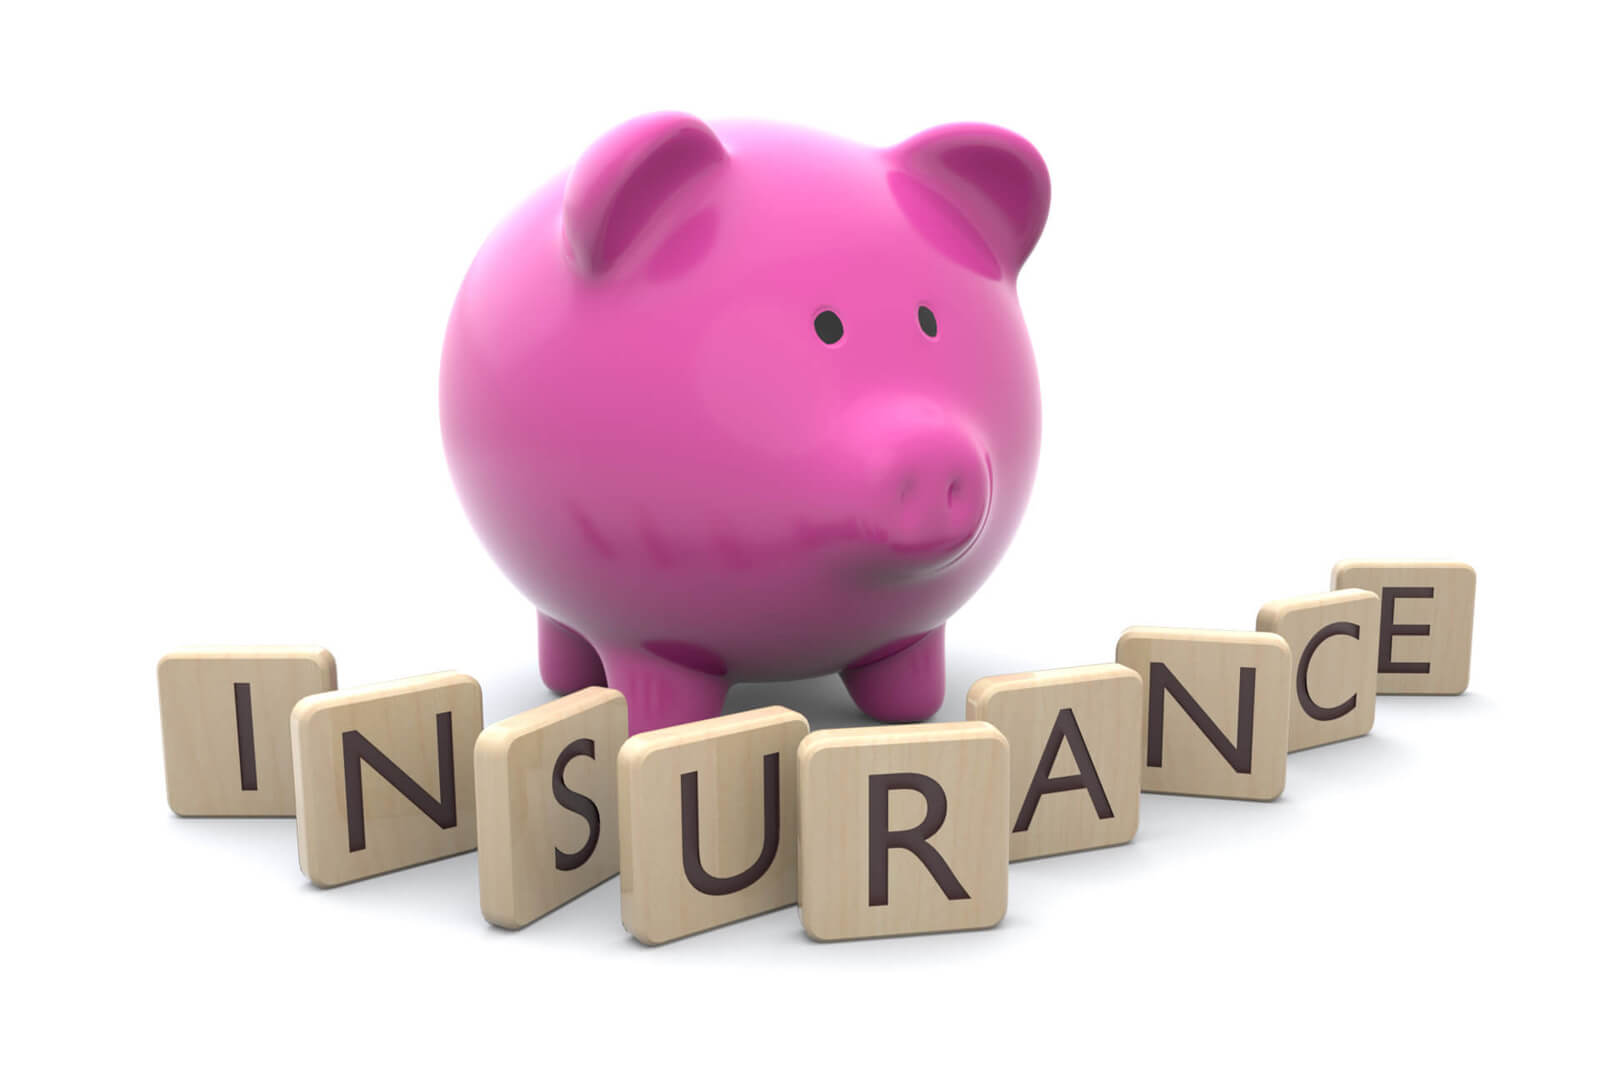 bde car insurance savings